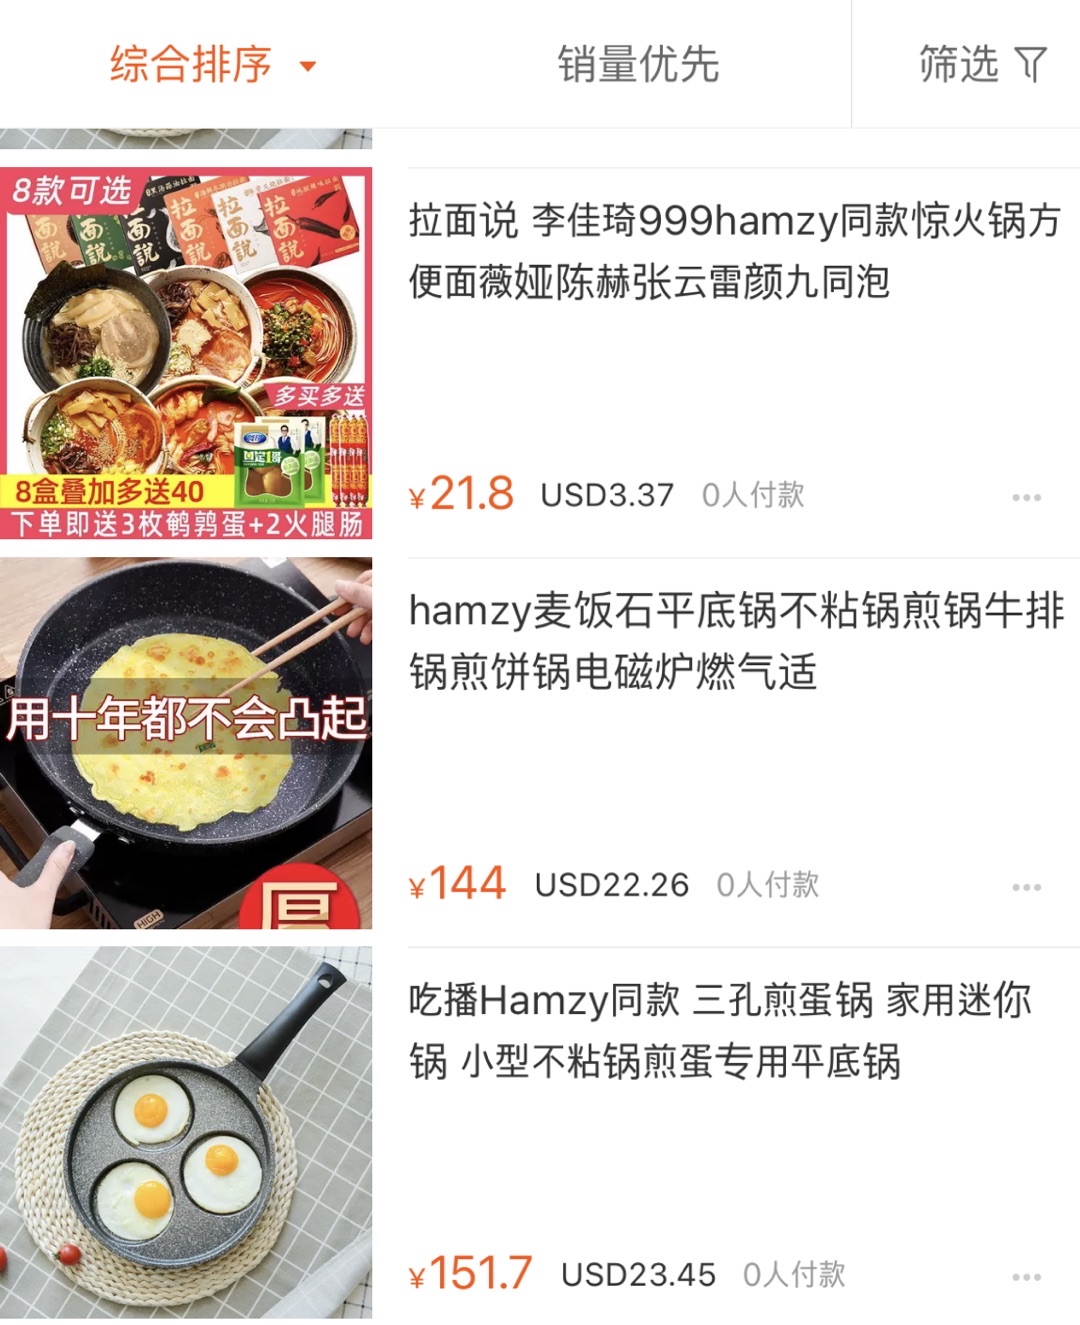 ▲  중국 쇼핑몰 타오바오에서 판매 중인 햄지 관련 상품